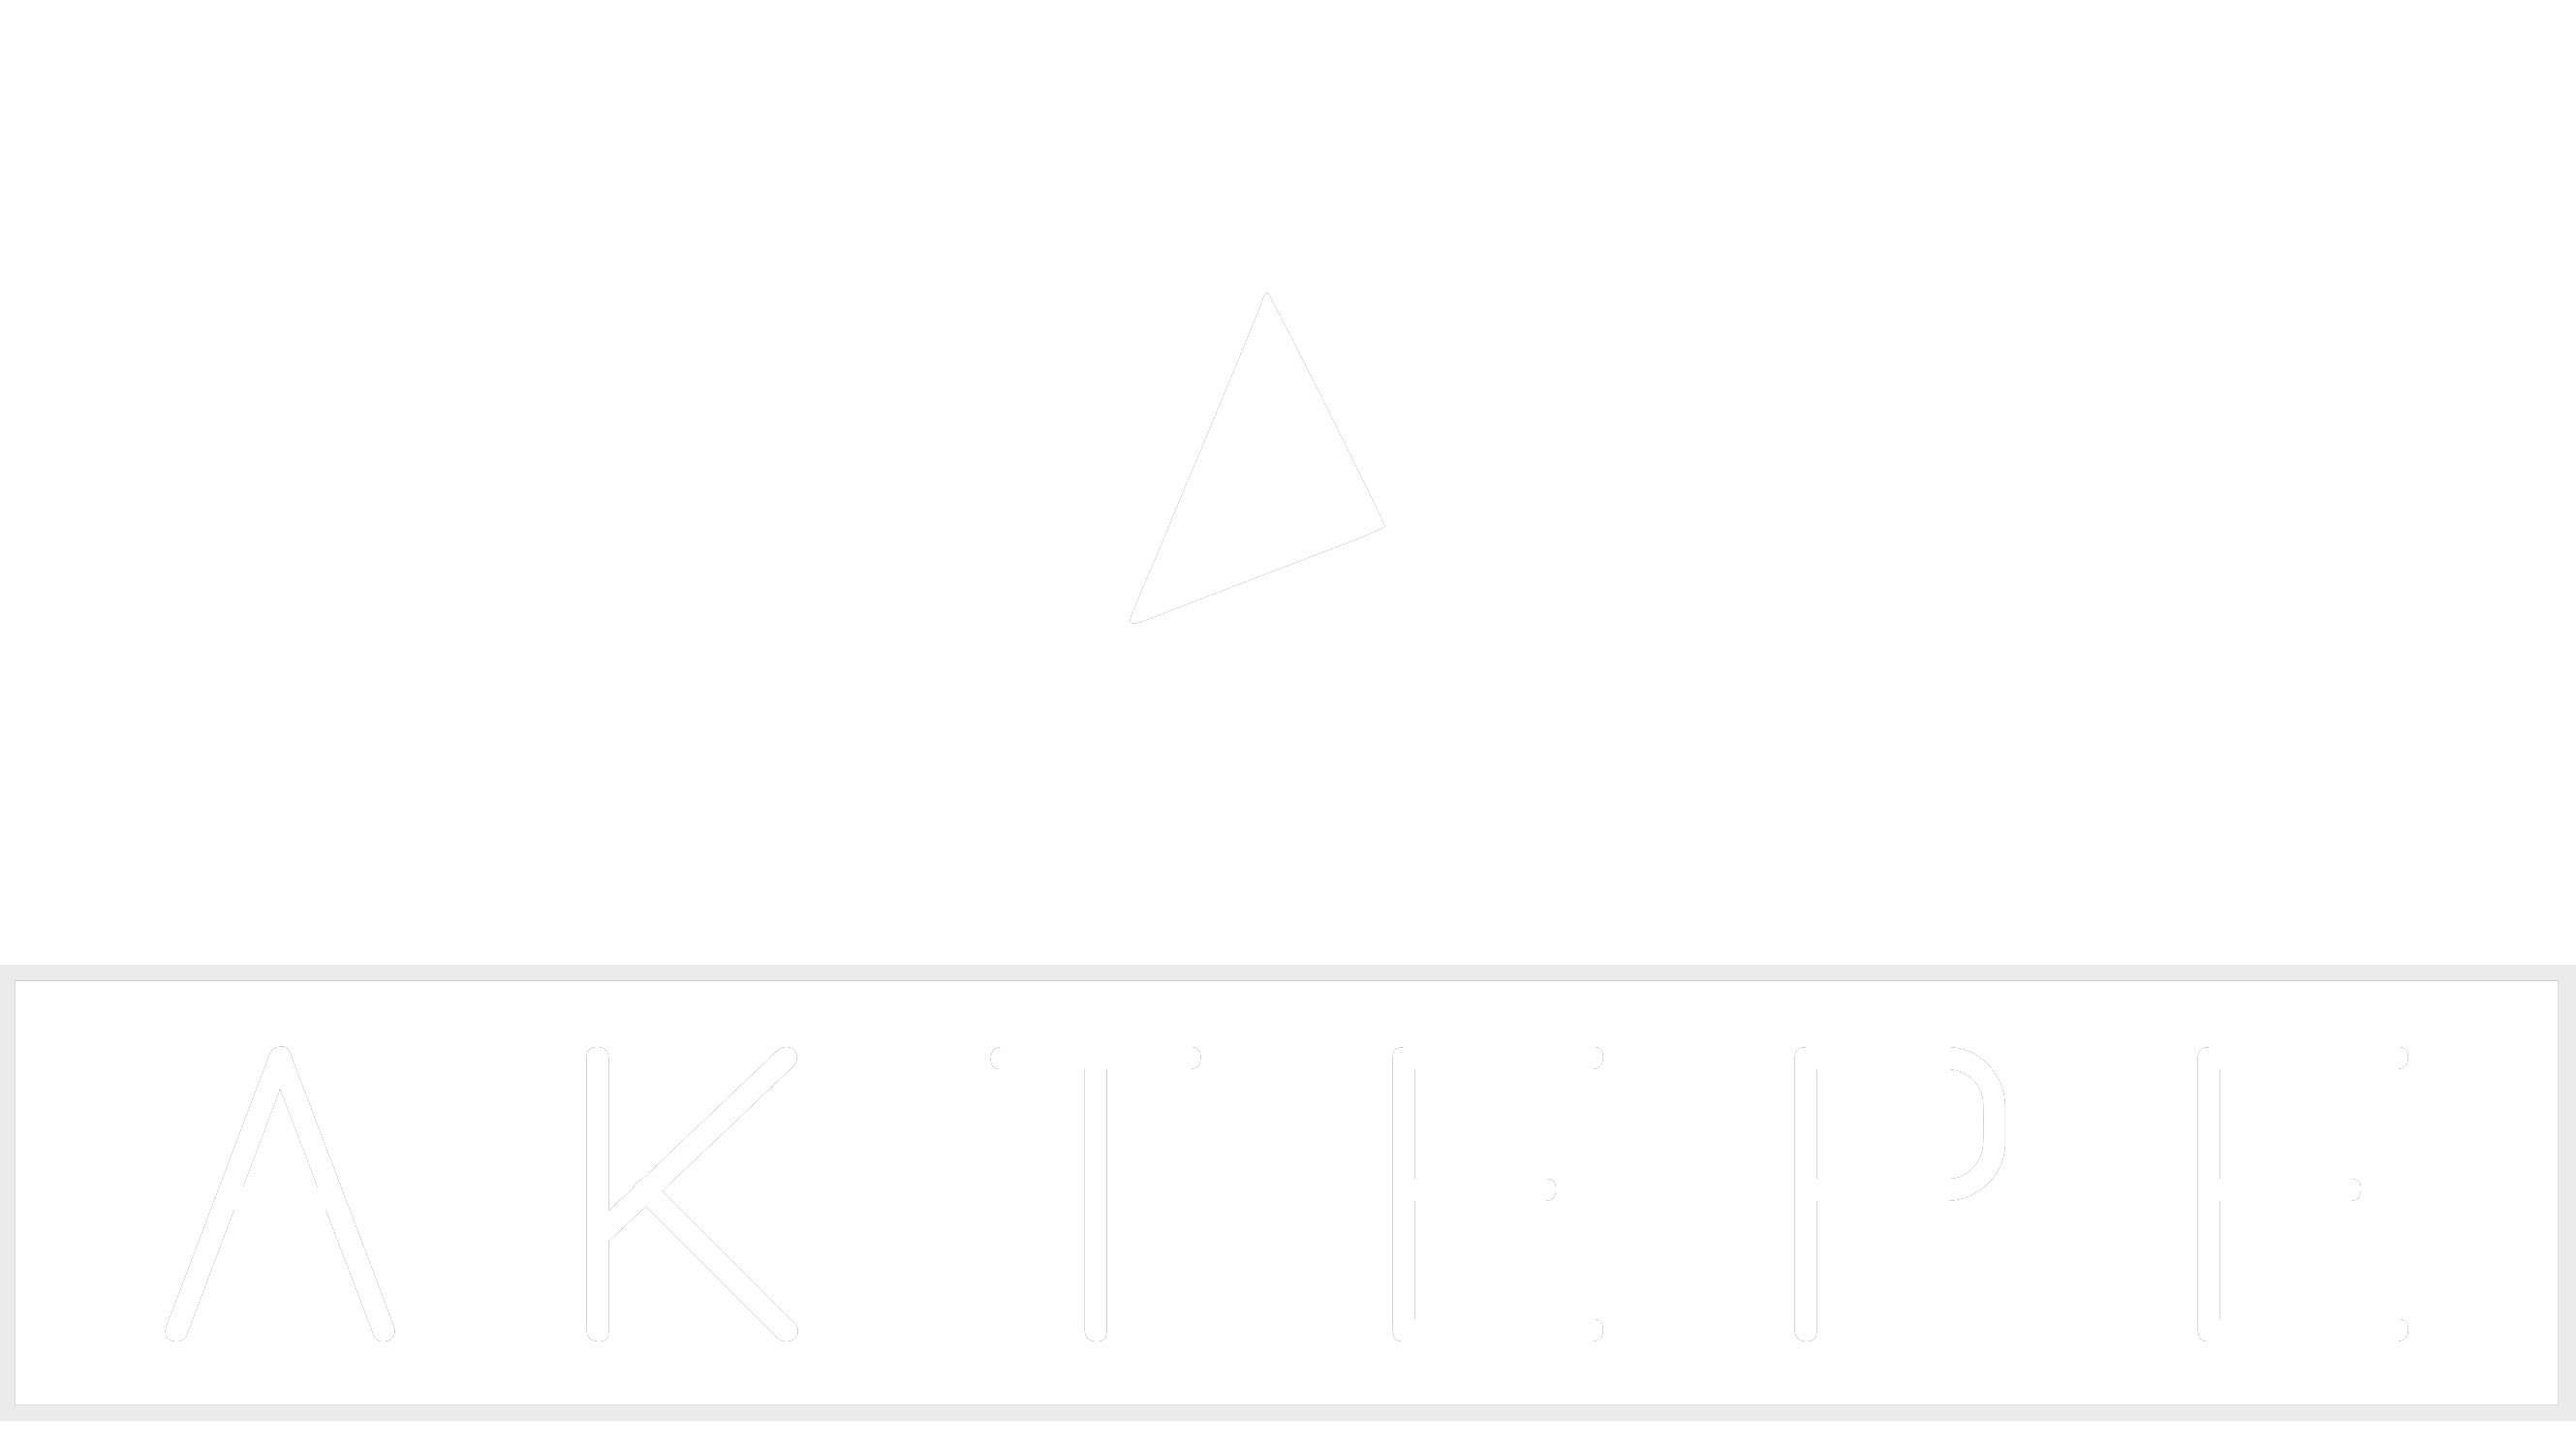 E Class - Aktepe Shop - Oto Müzik Görüntü Navigasyon Sistemleri ve Teyp Çerçevesi Satış Merkezi